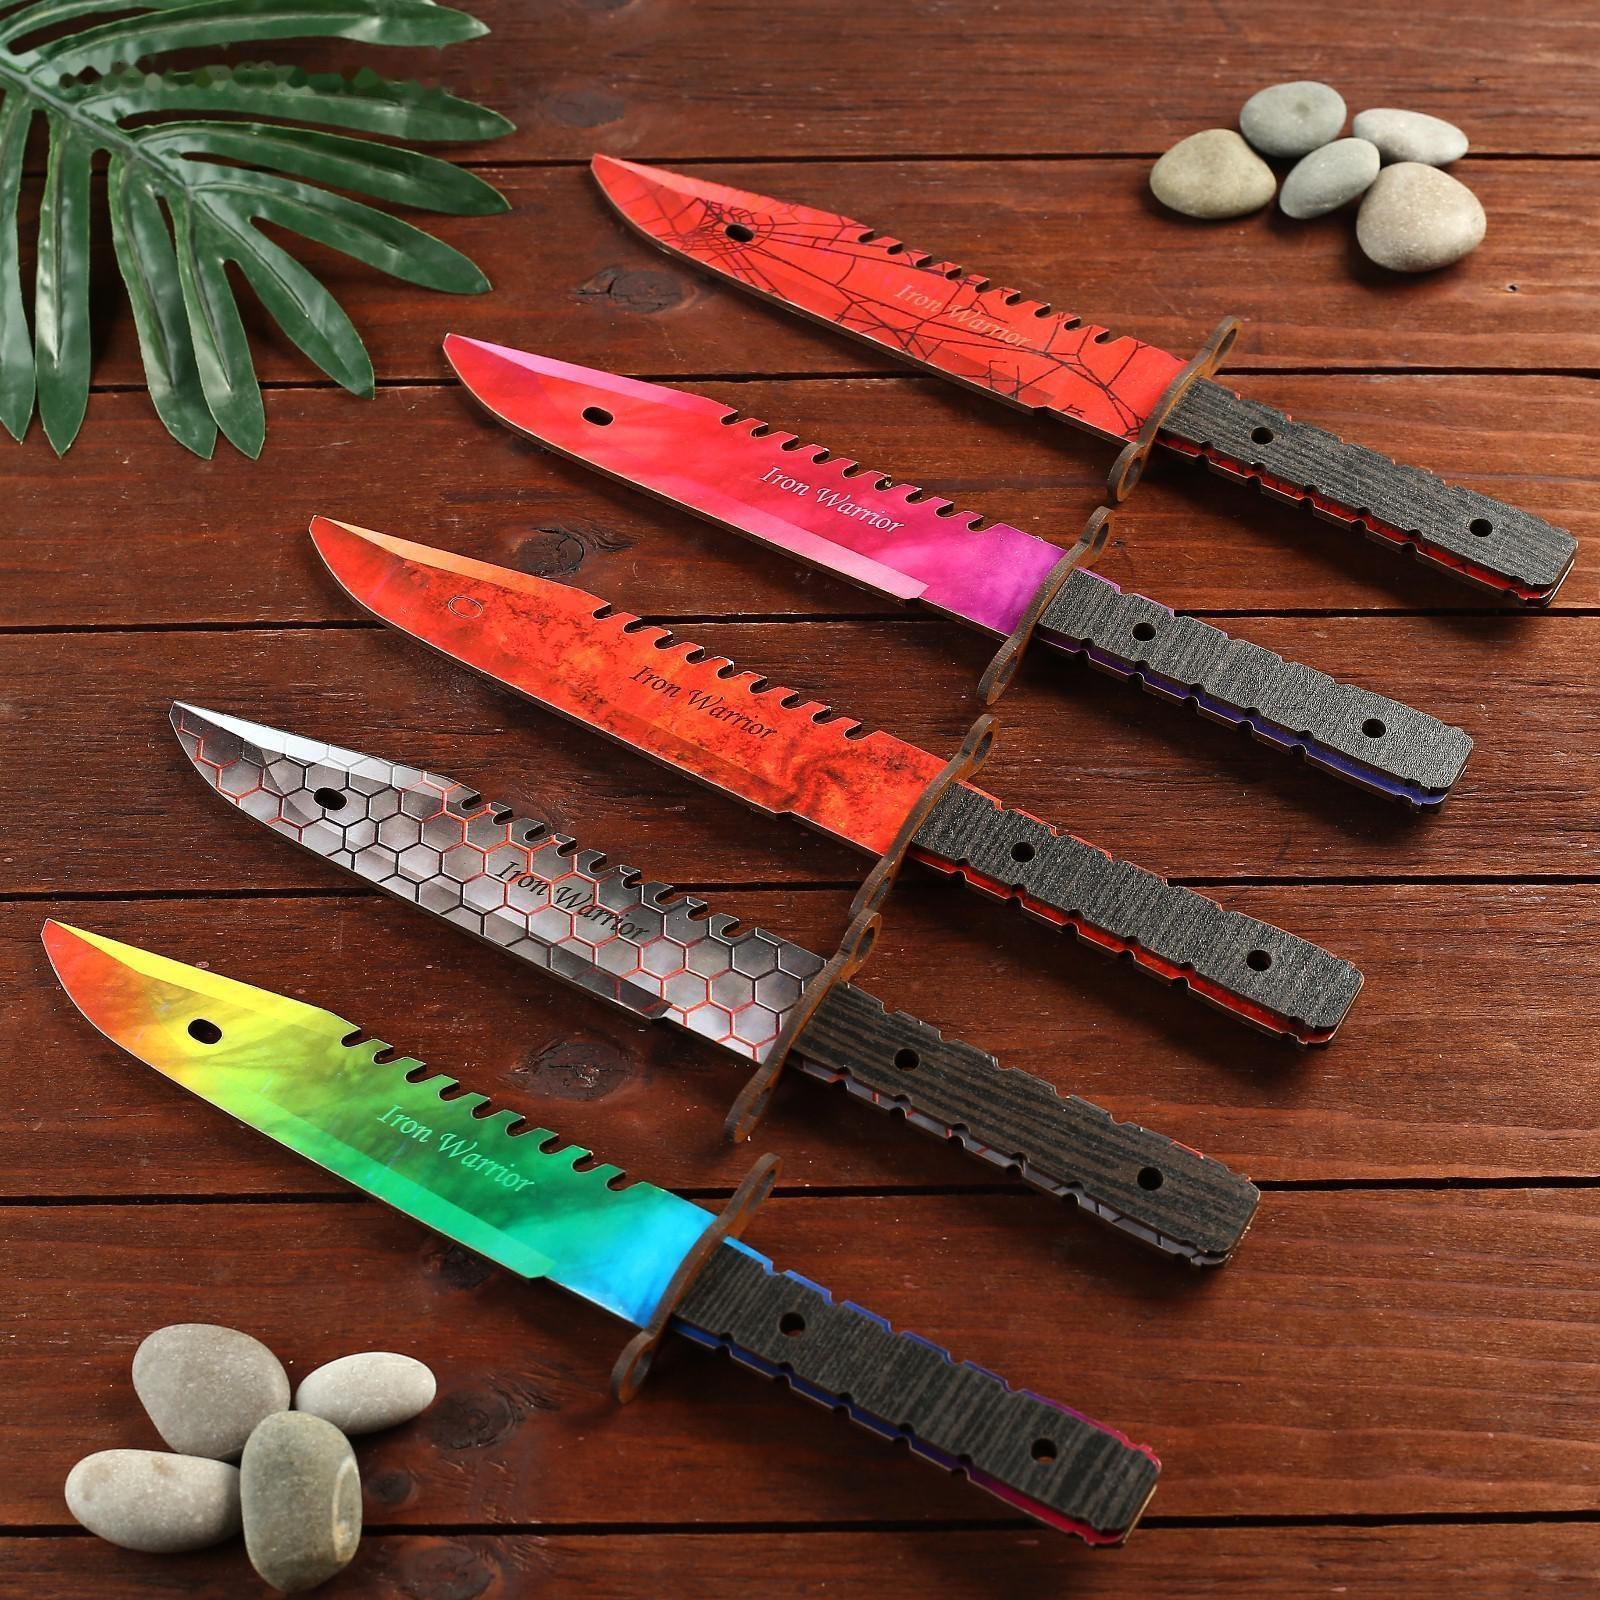 Сувенир деревянный нож 2 модификация, 5 расцветов в фасовке, МИКС